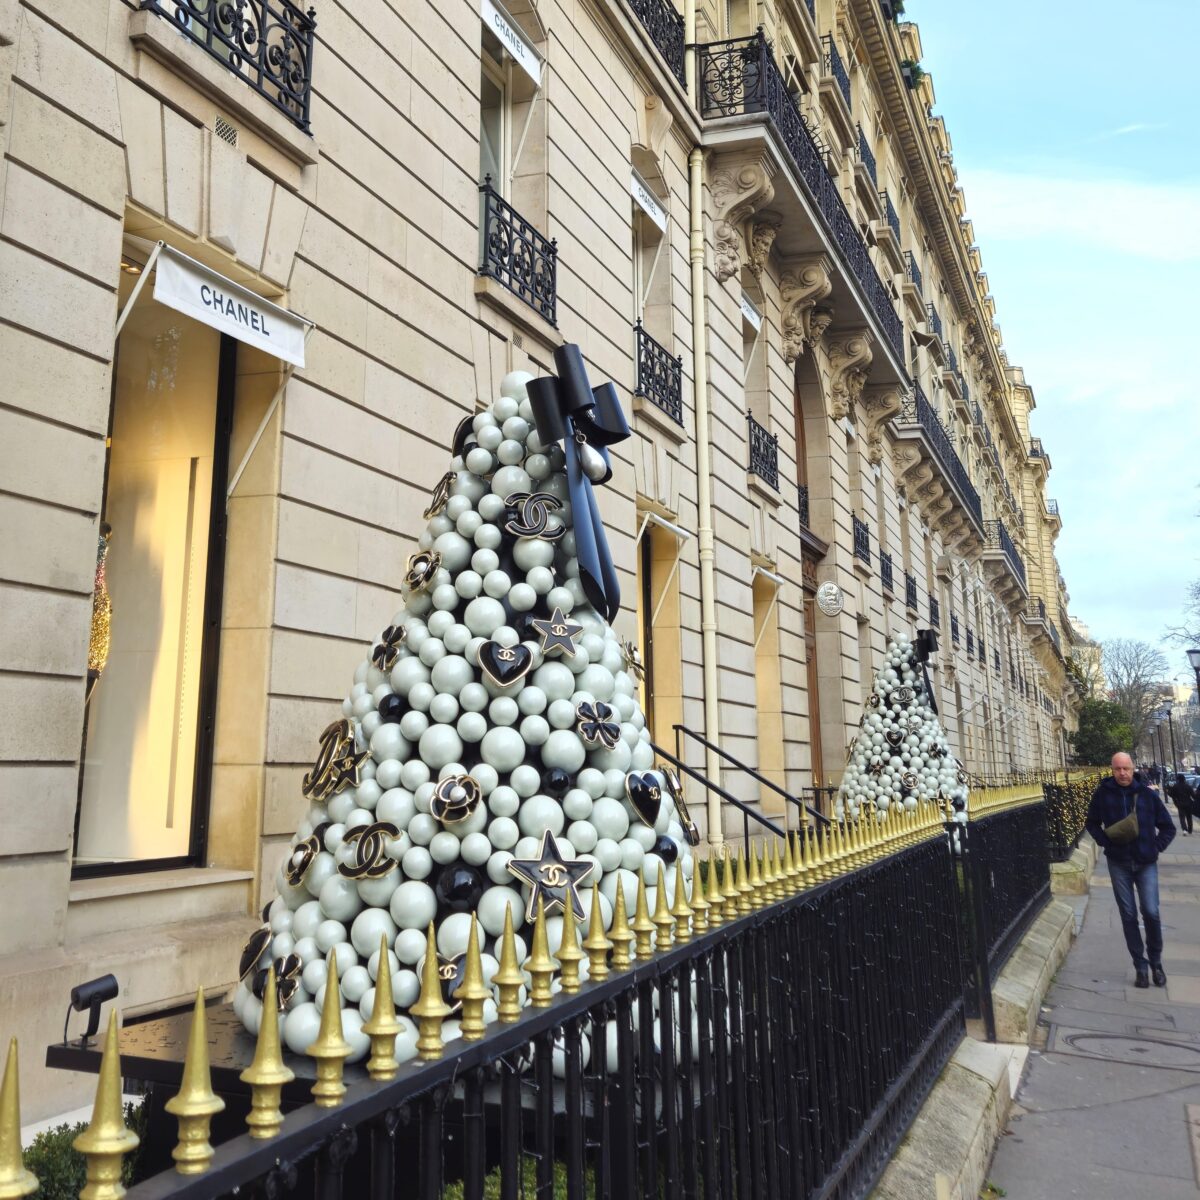 Chanel in Parijs op de dure Avenue Montaigne met in de etalages vele broekpakken gezien